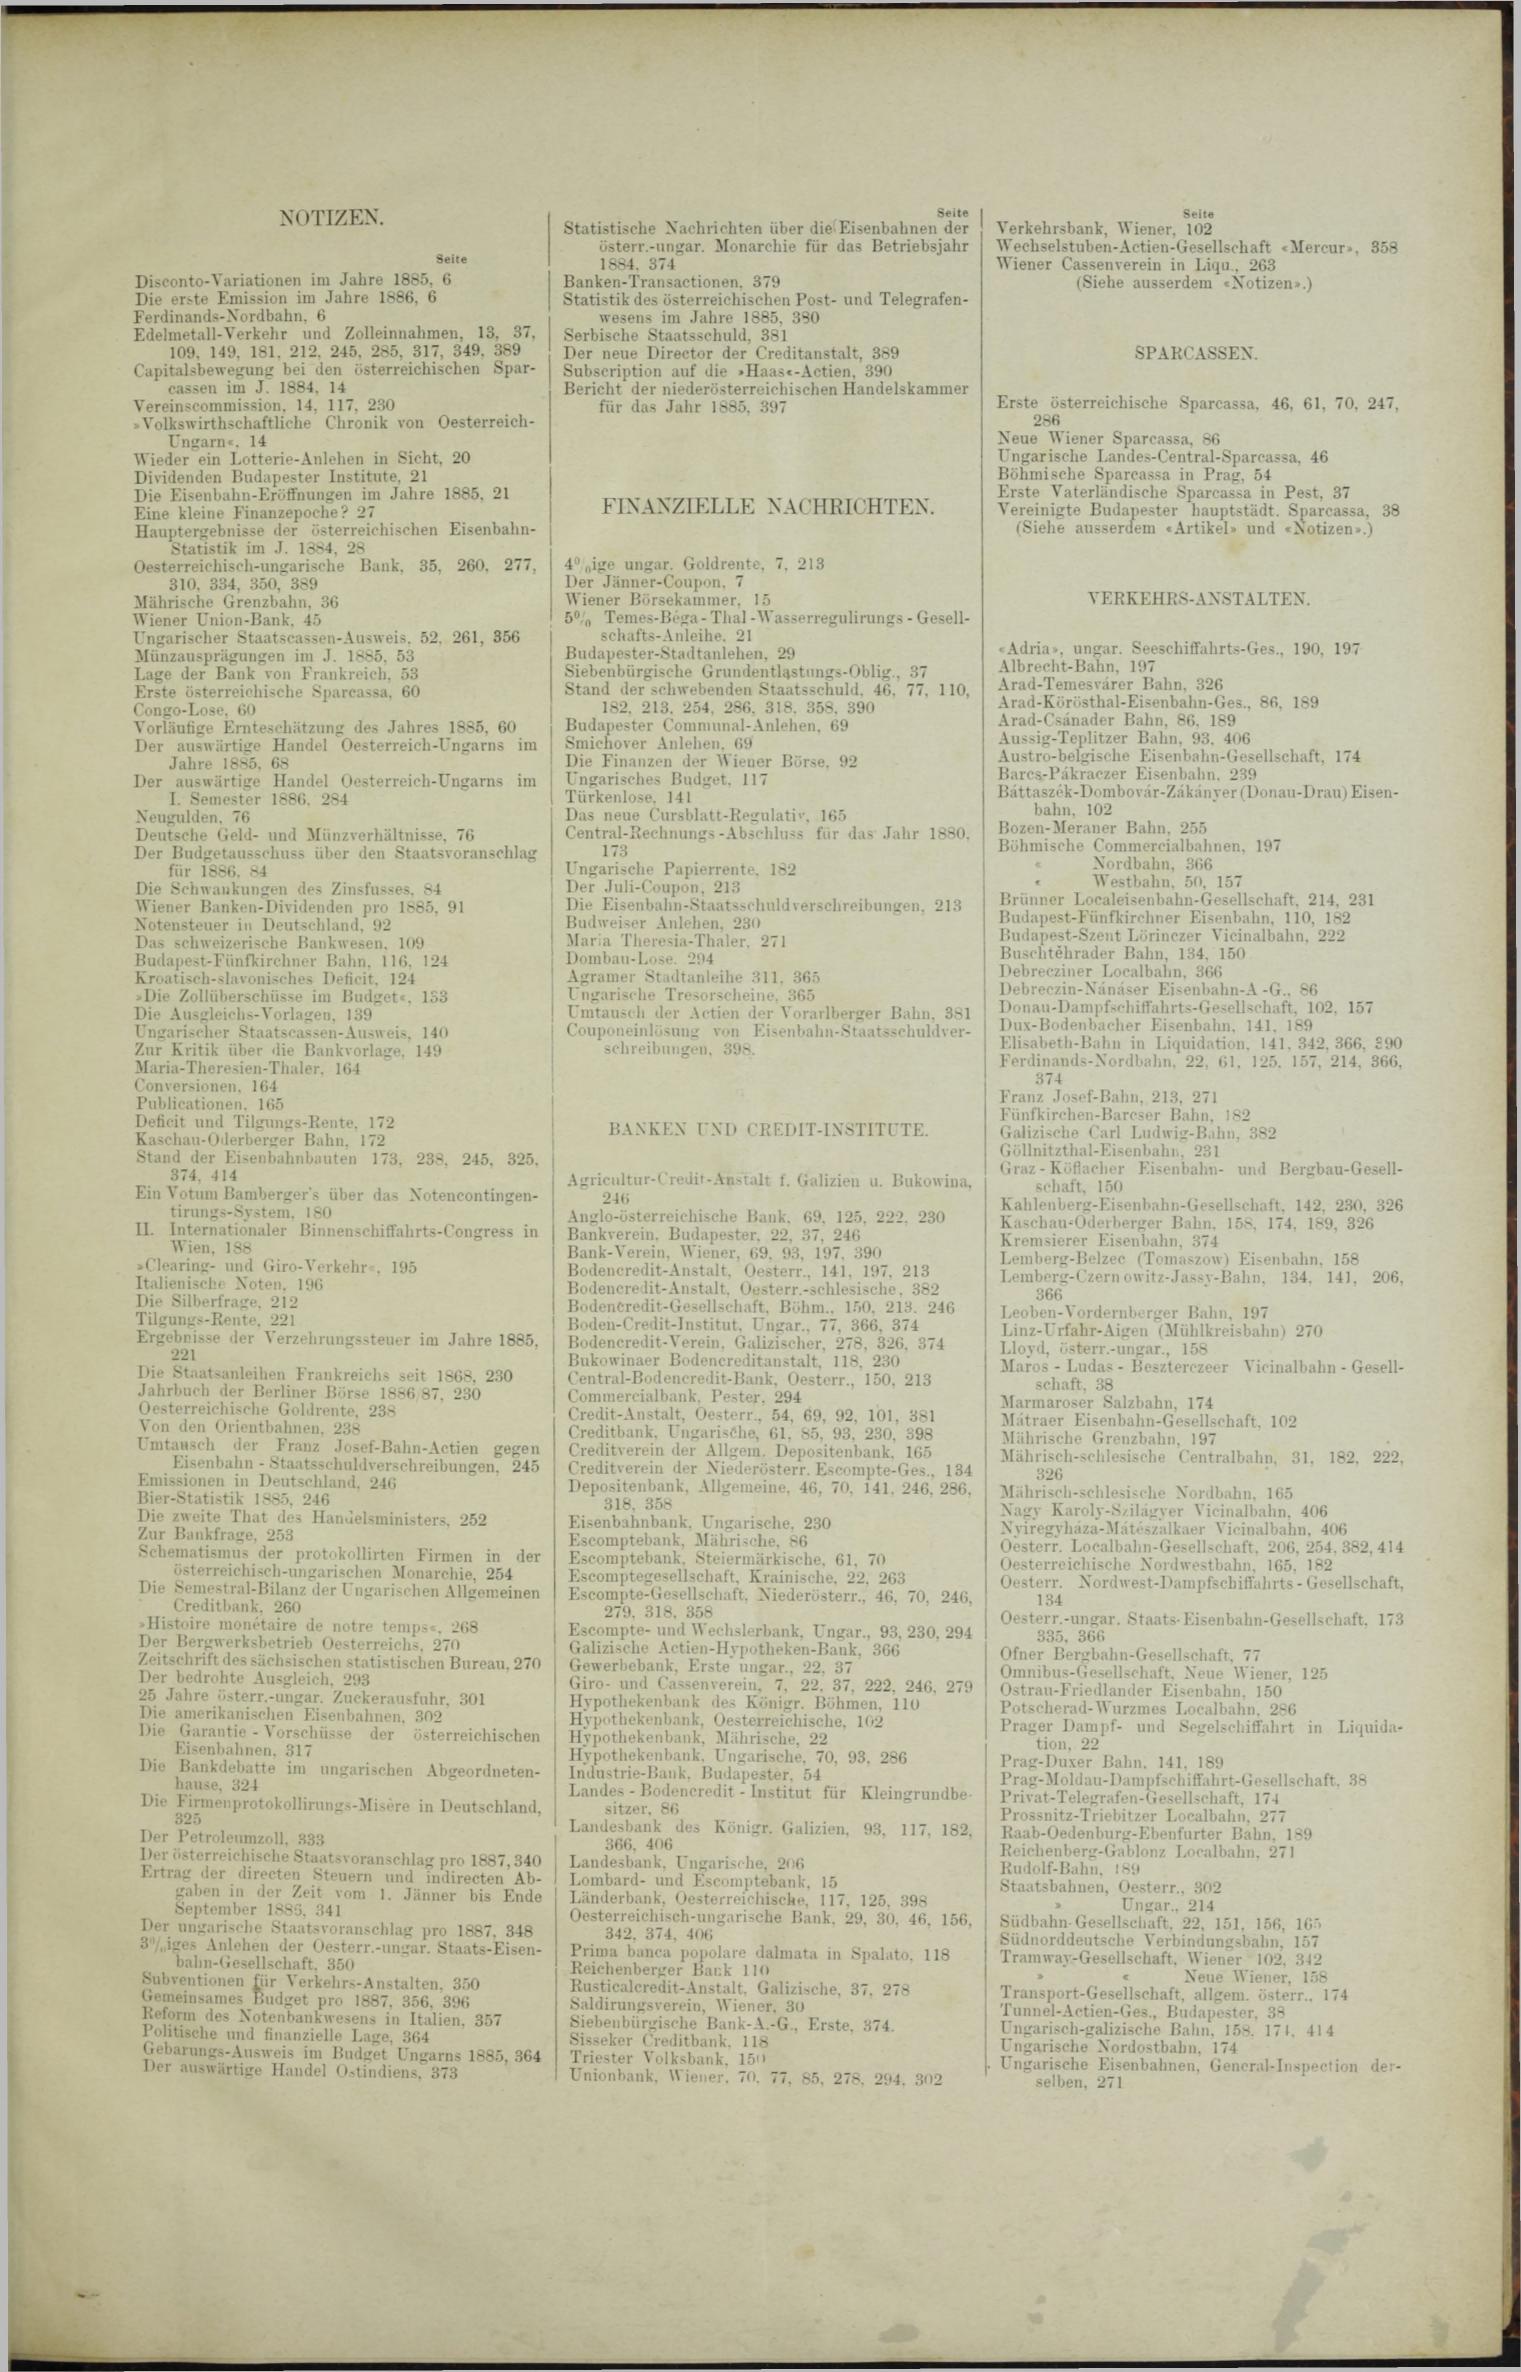 Der Tresor 25.11.1886 - Seite 11